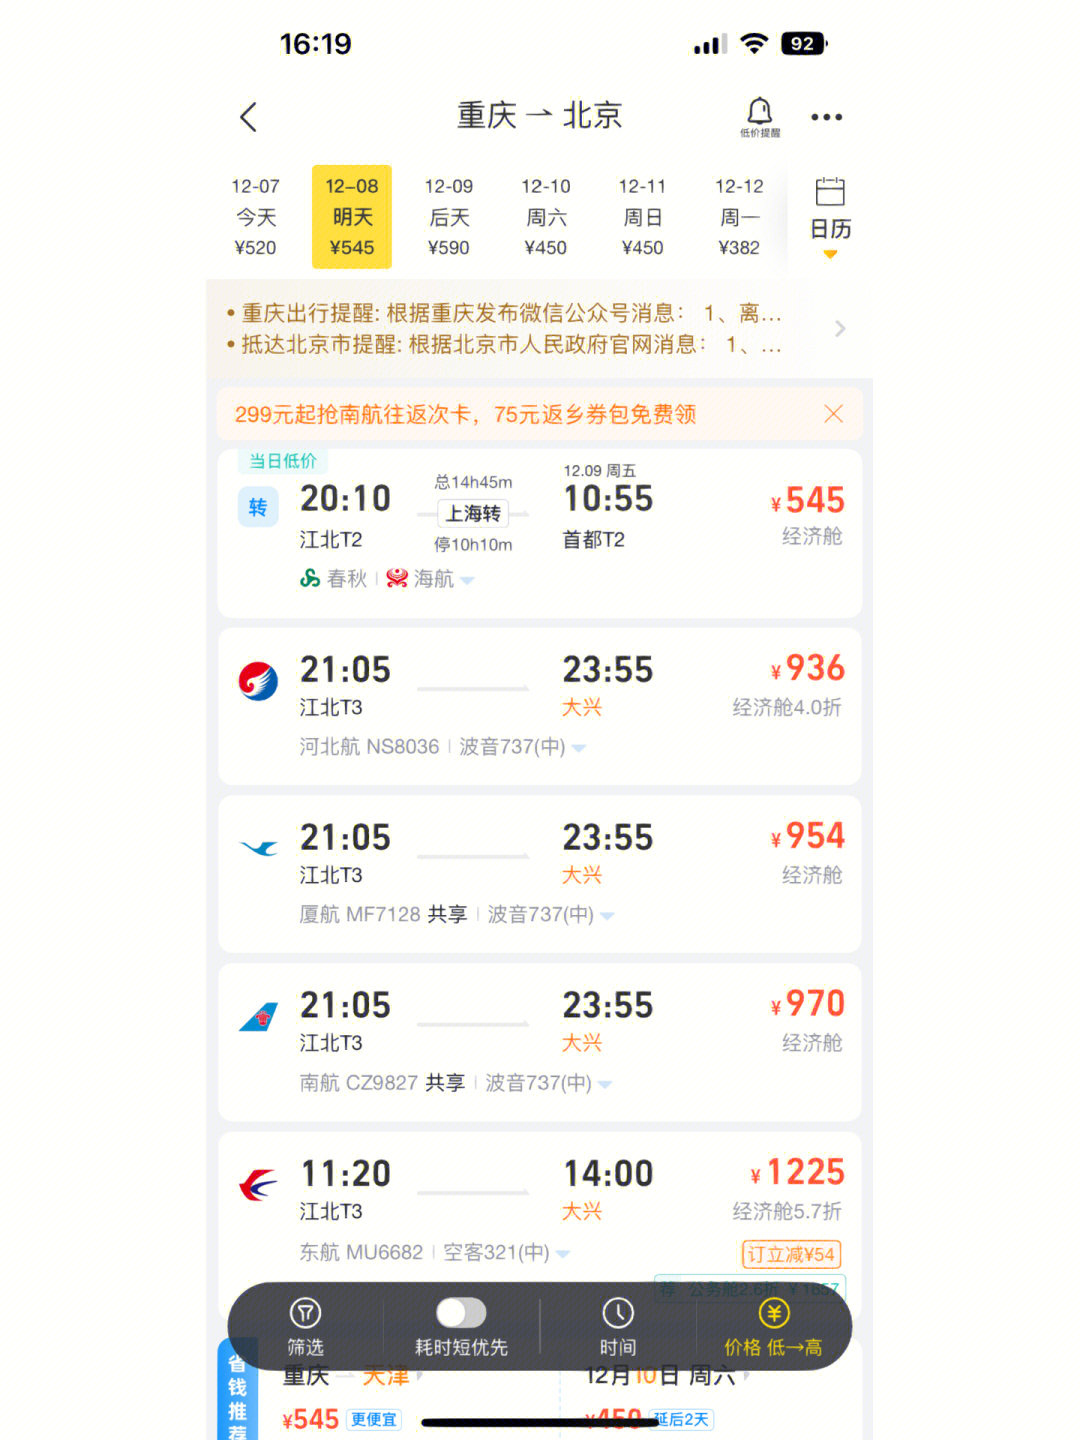 重庆飞三亚,丽江,昆明的机票已经开始涨价了!